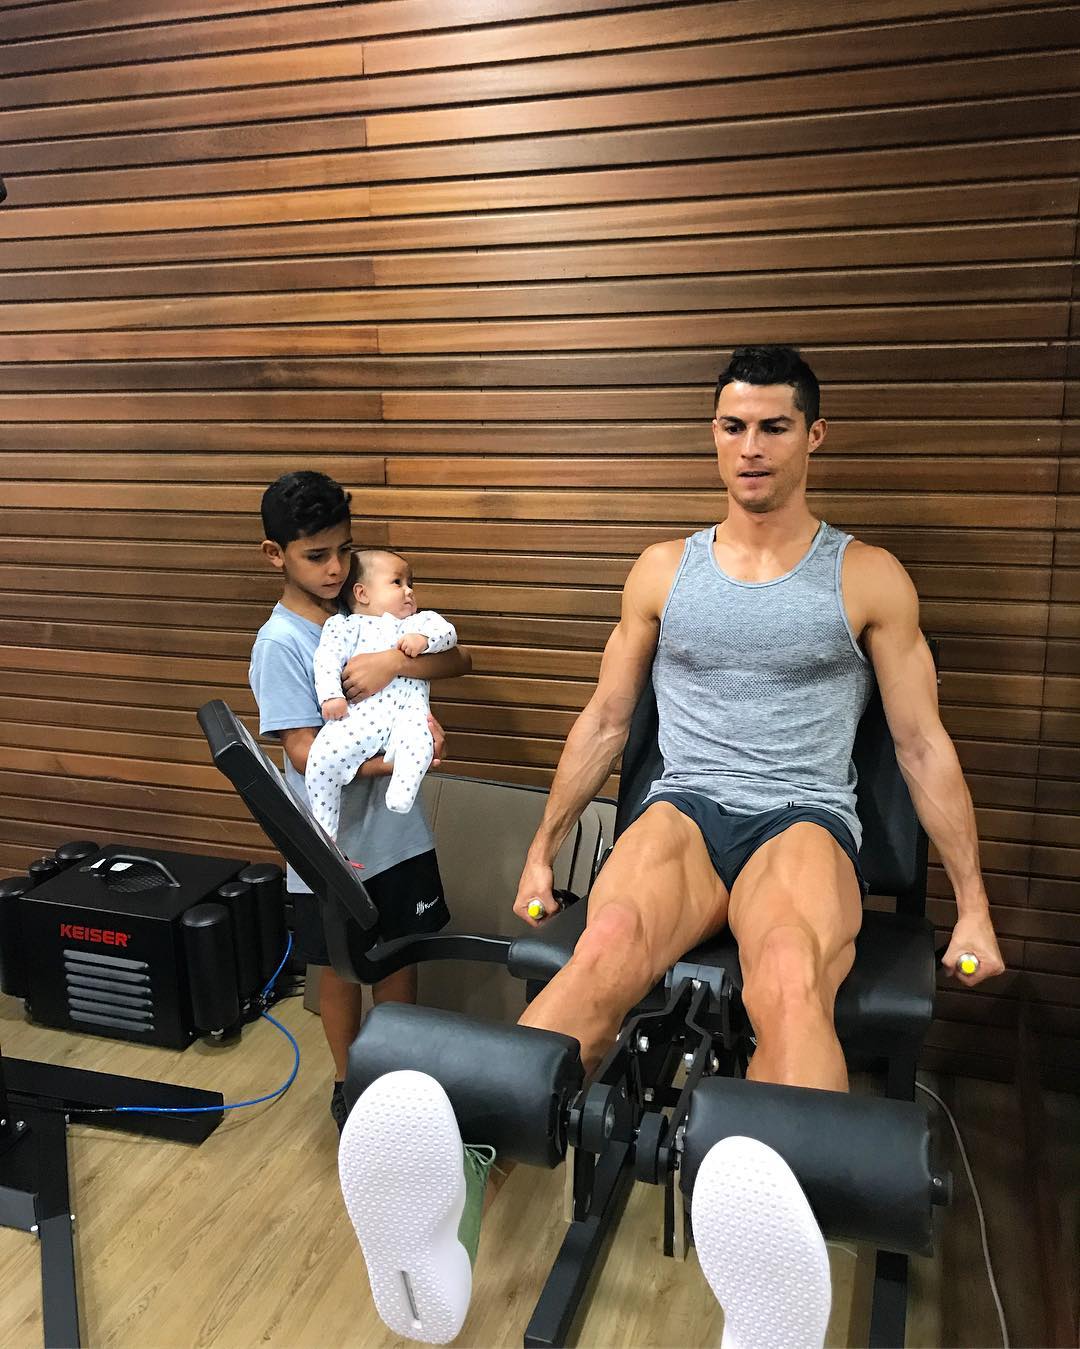 Con trai cưng của cầu thủ Ronaldo bị bố cấm ăn khoai tây chiên